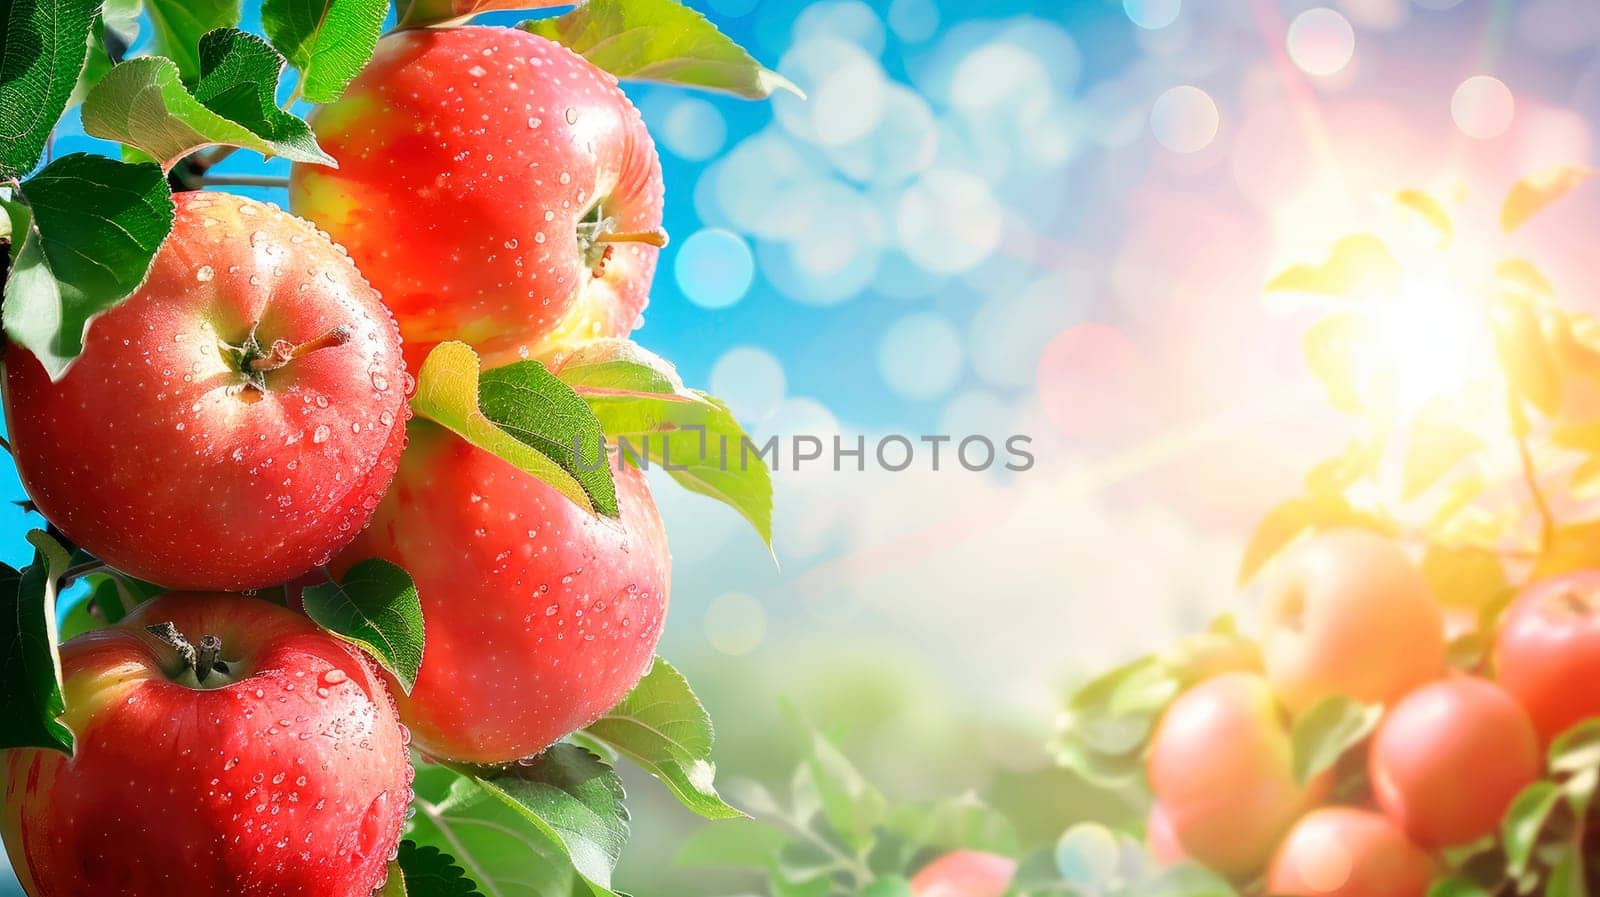 Apple harvest in the garden. selective focus. food.